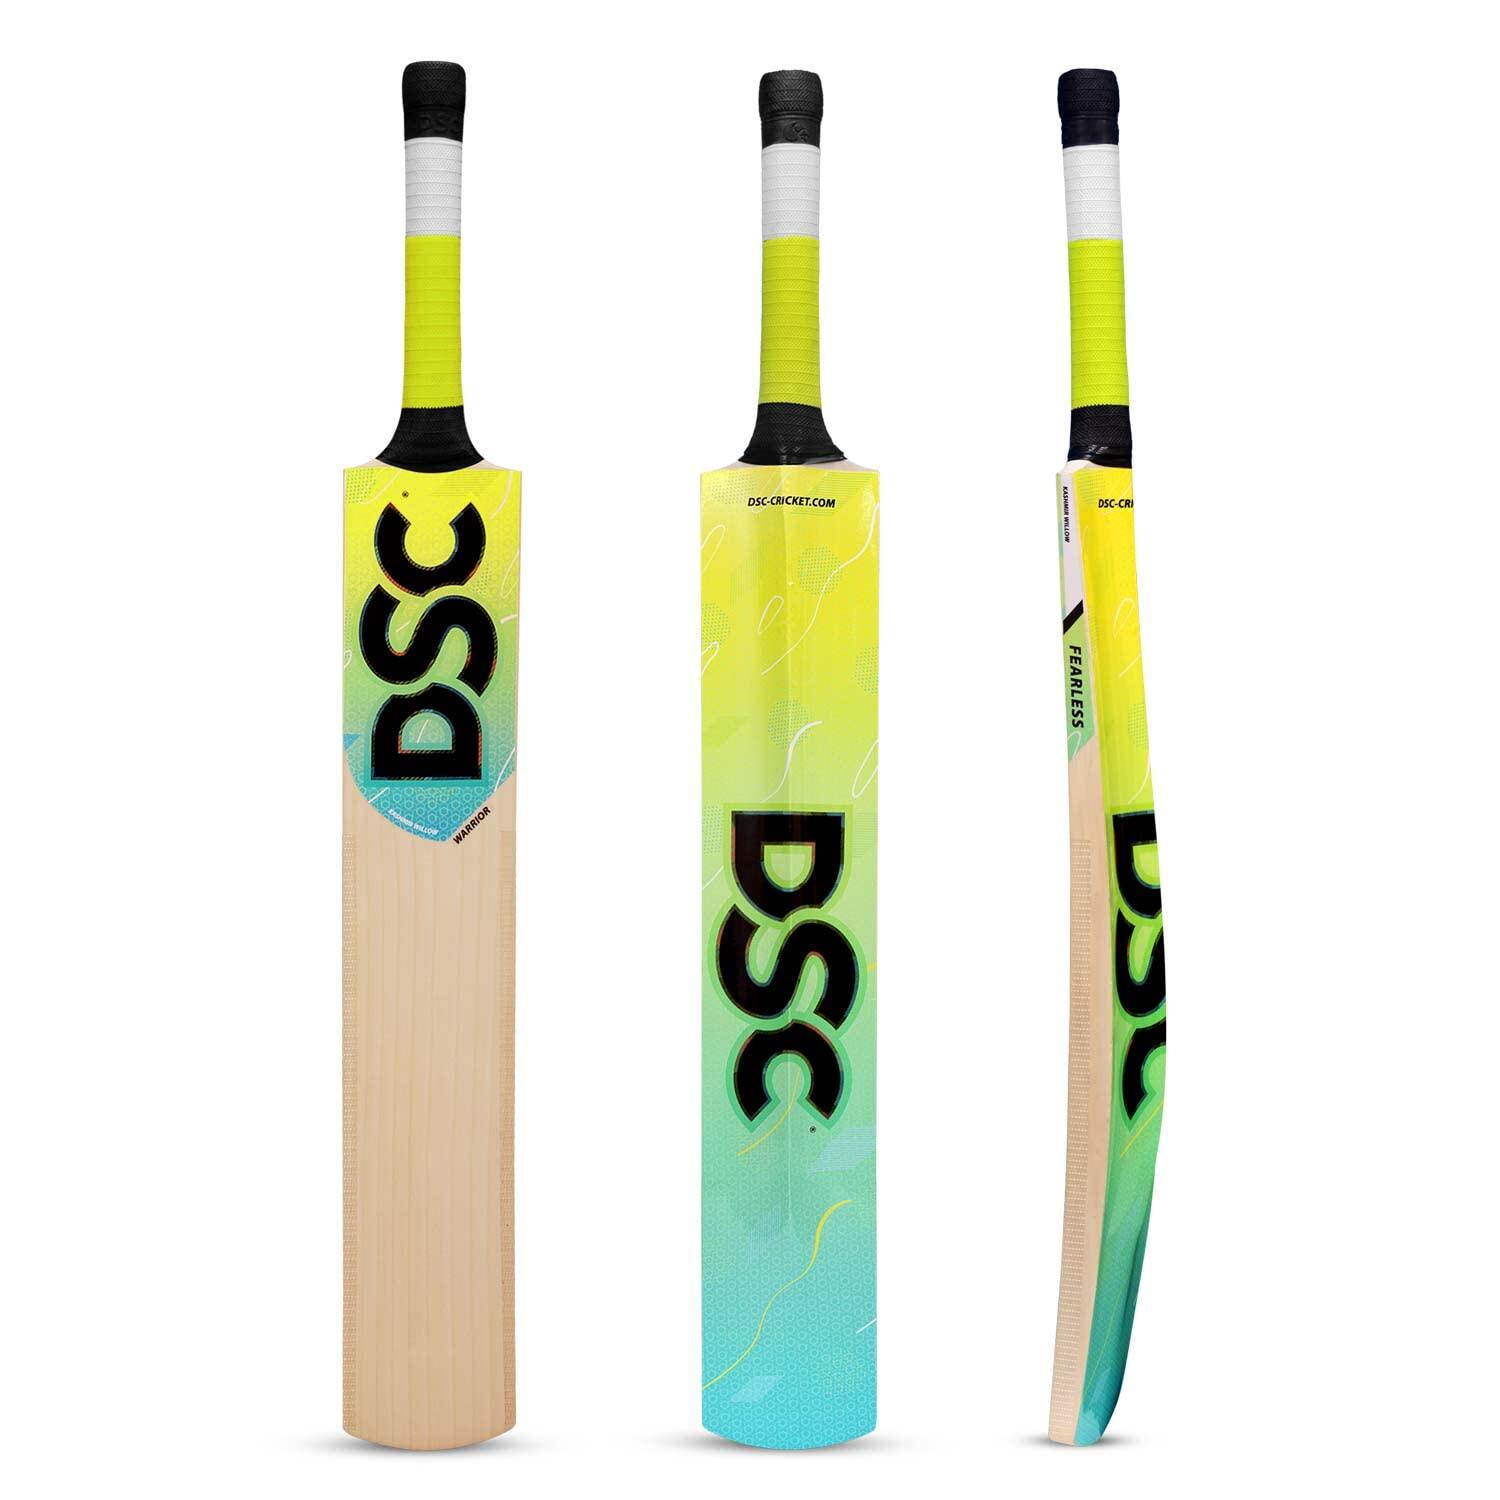 DSC Wildfire Warrior Tennis Cricket Bat Short Handle 1/6